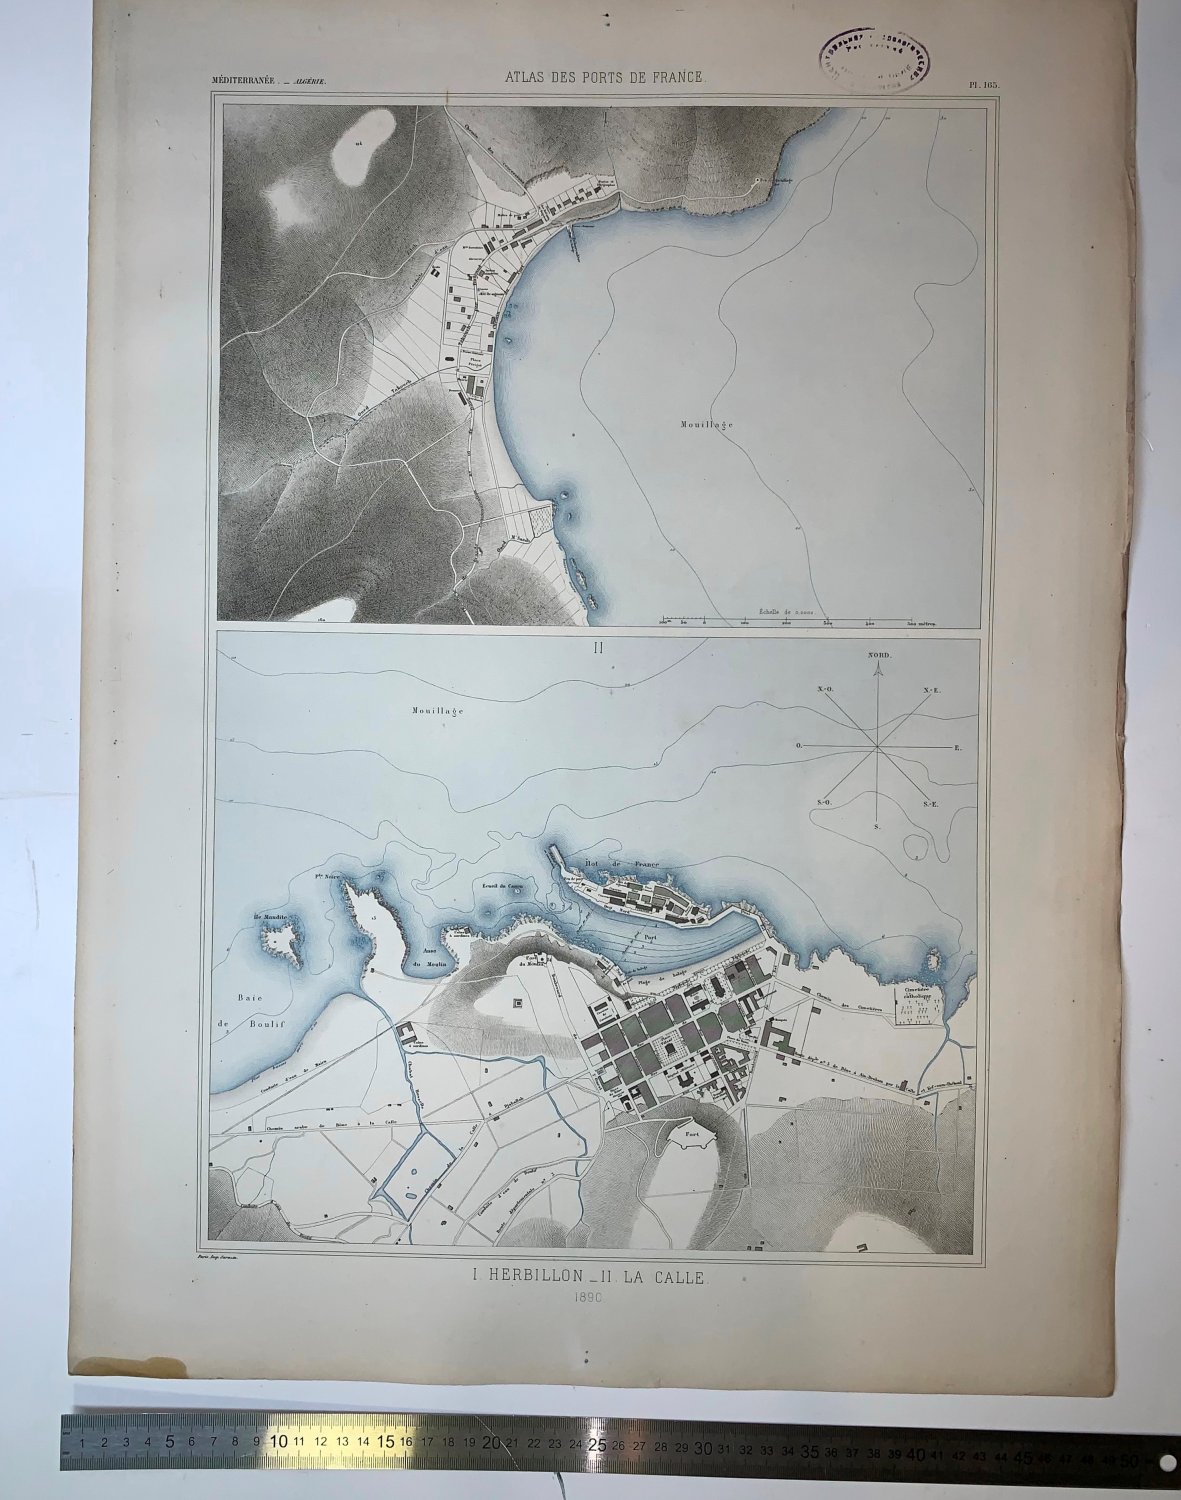 Atlas des ports de France. I. Herbillon. II. La Calle